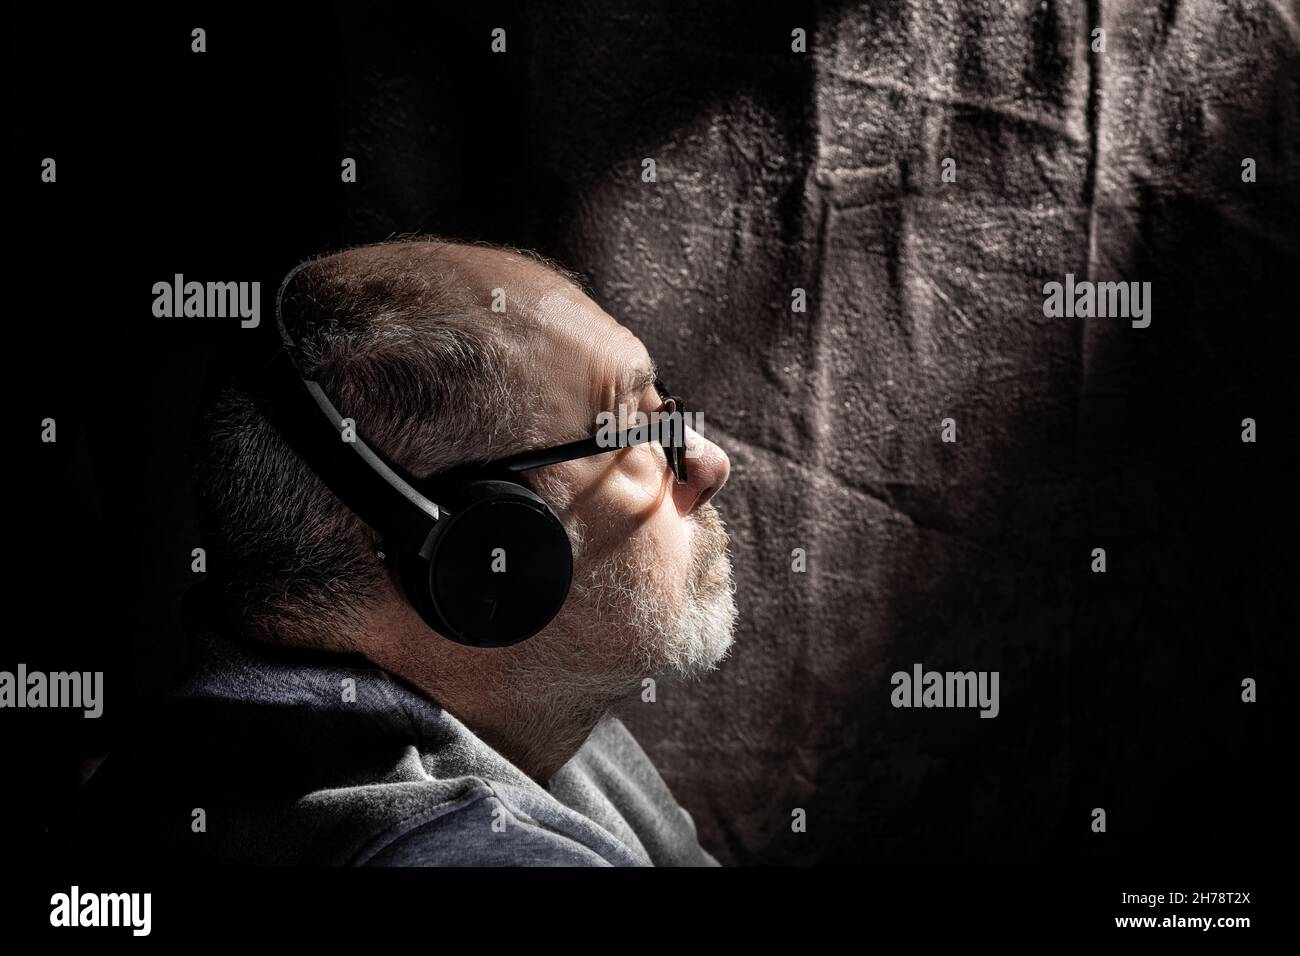 Ritratto a basso profilo dei tasti di un maschio dai capelli grigi che ascolta la musica attraverso i telefoni della testa Foto Stock